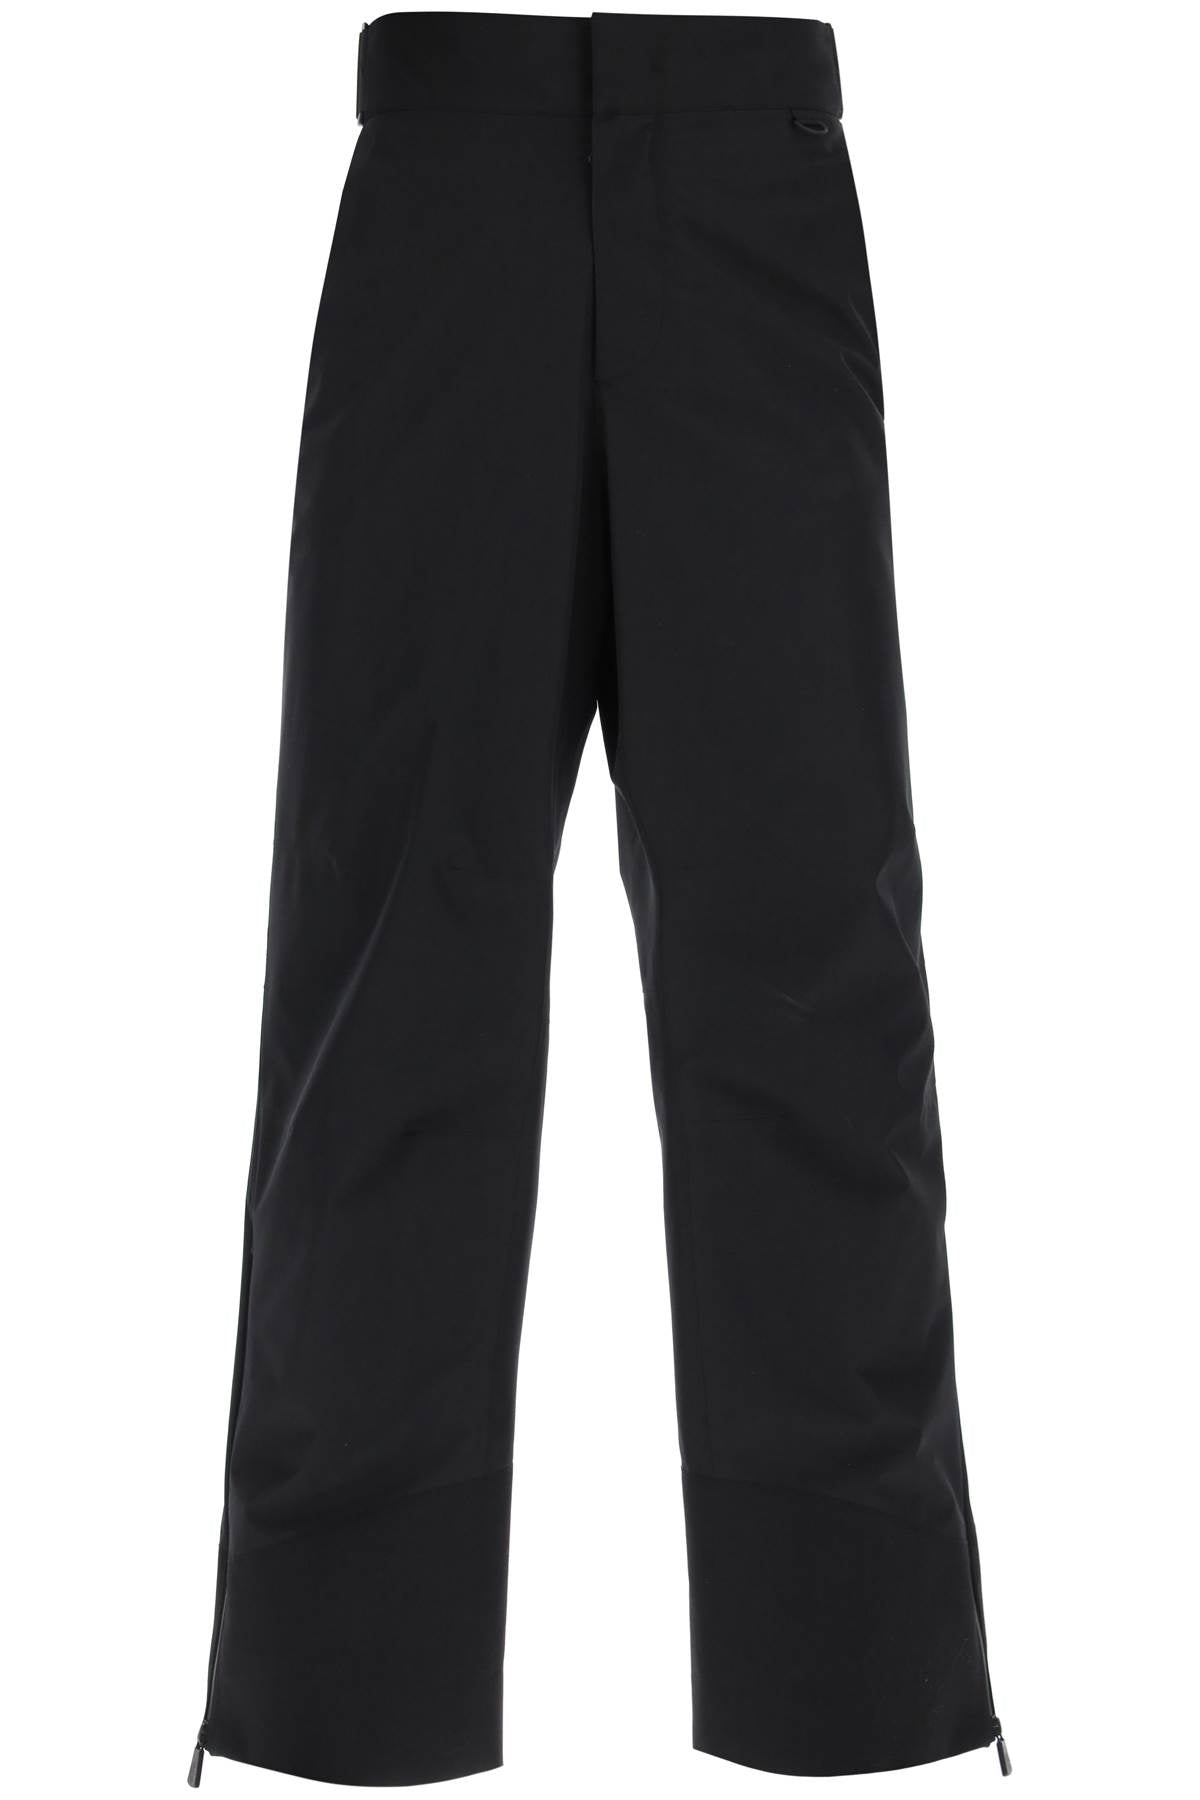 MONCLER GRENOBLE Men's Black Technical-Nylon Ski Pants for FW23